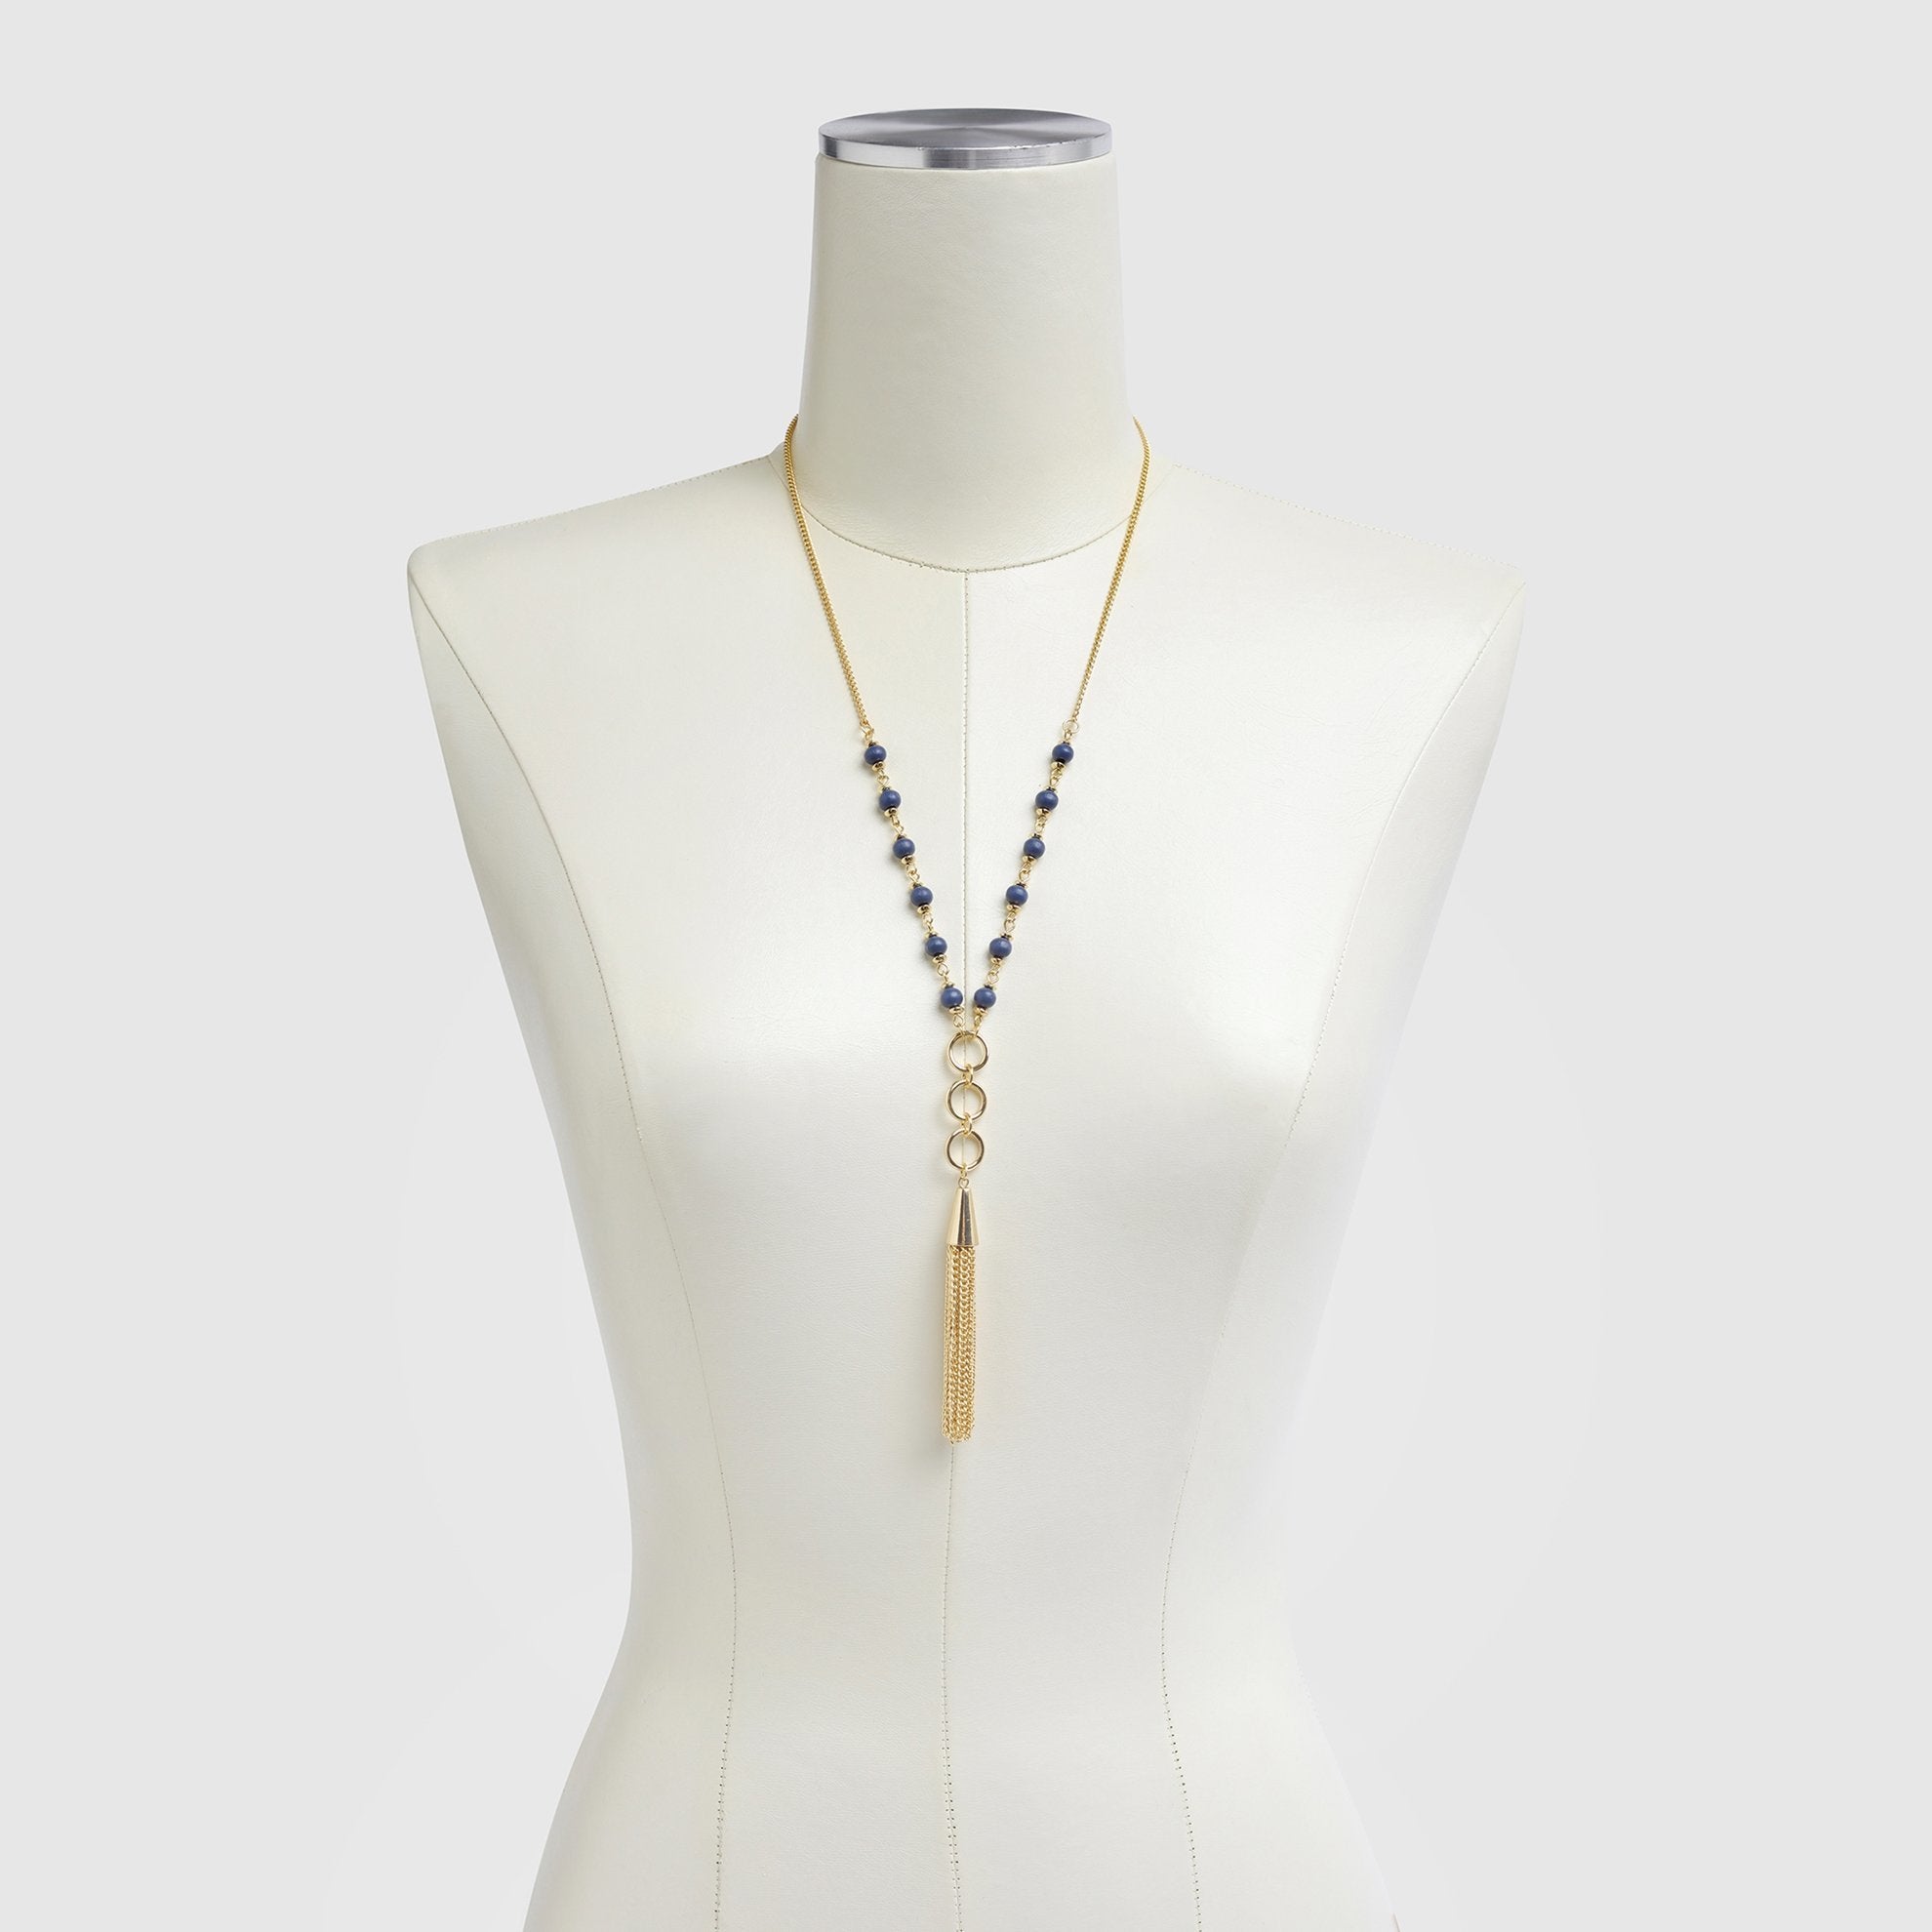 Tassel Necklace on Dress Form